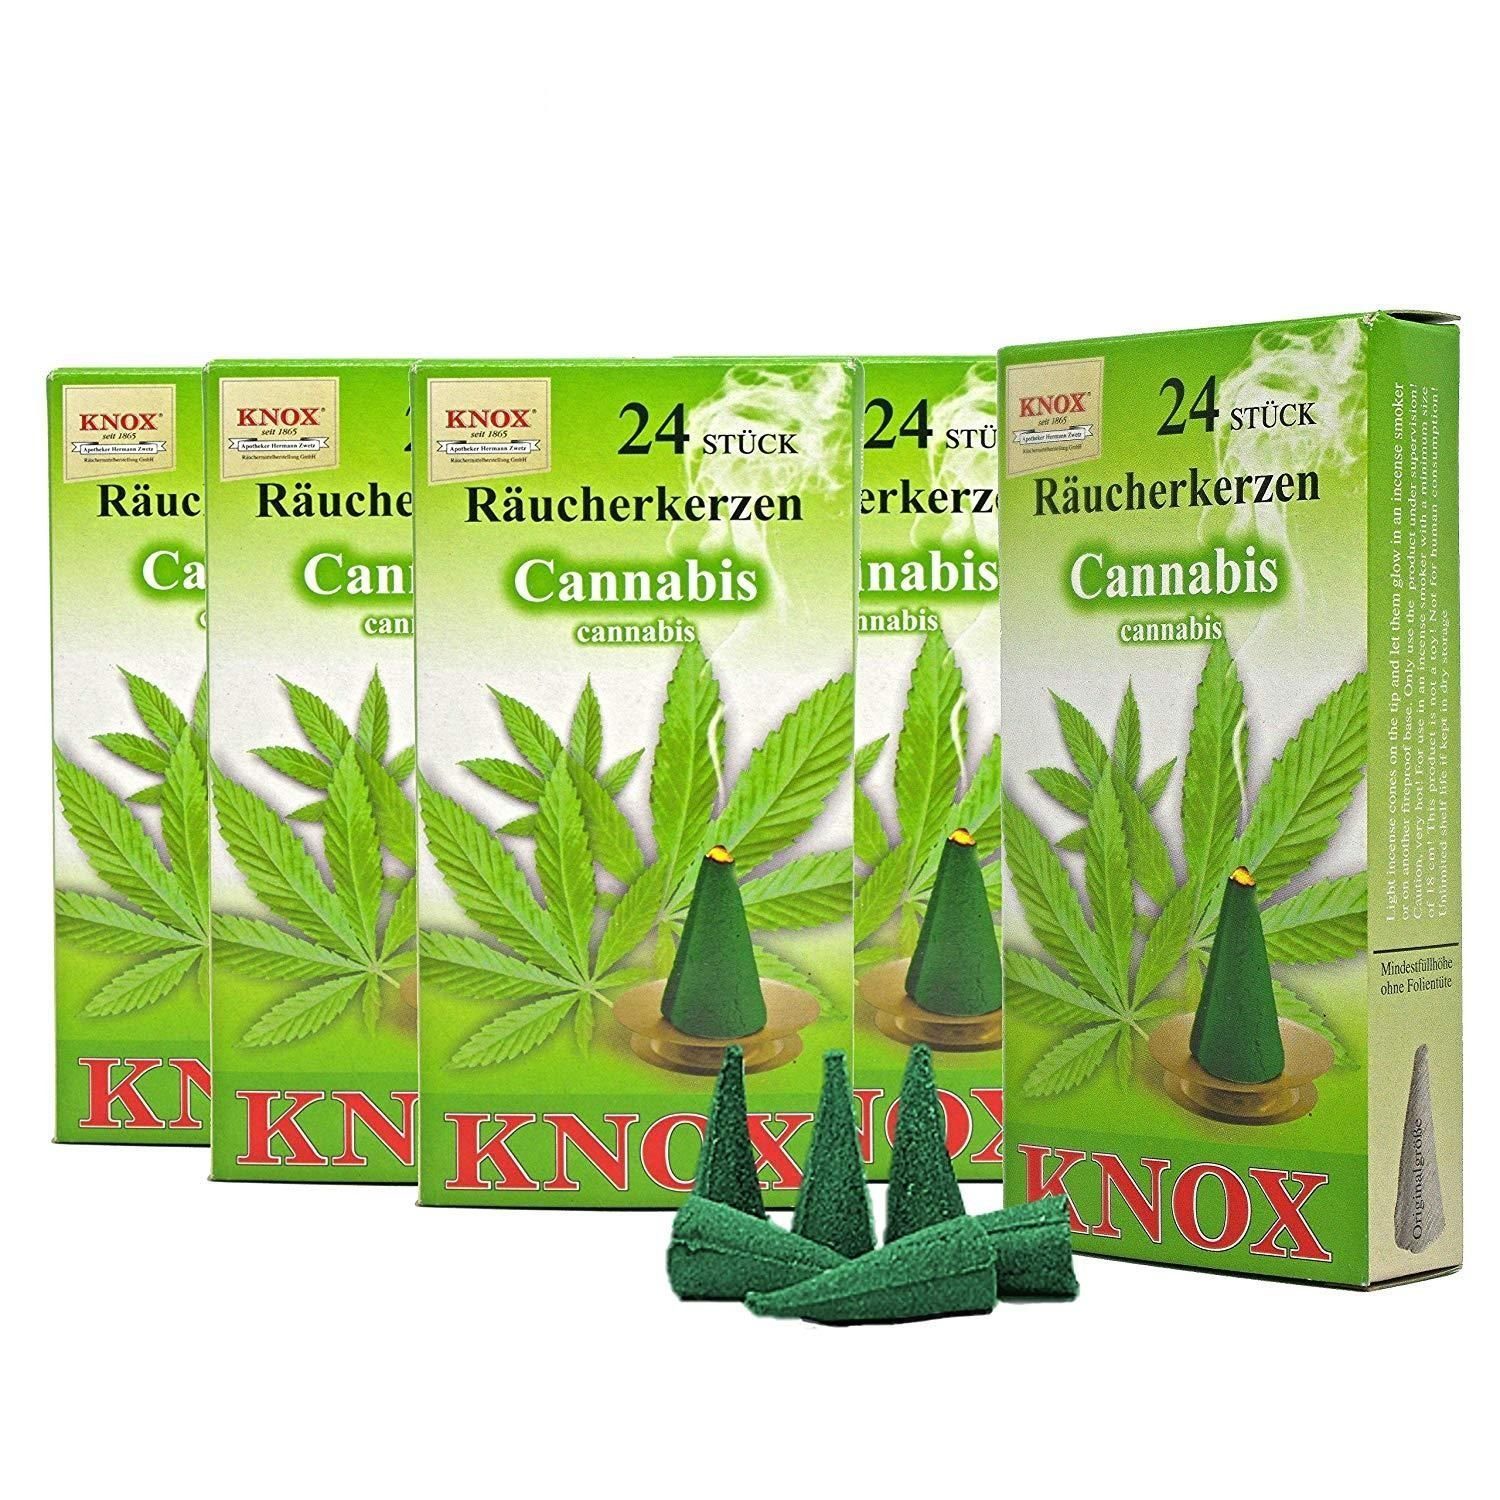 KNOX Räuchermännchen 5 Päckchen Räucherkerzen- Cannabis - 24er Packung